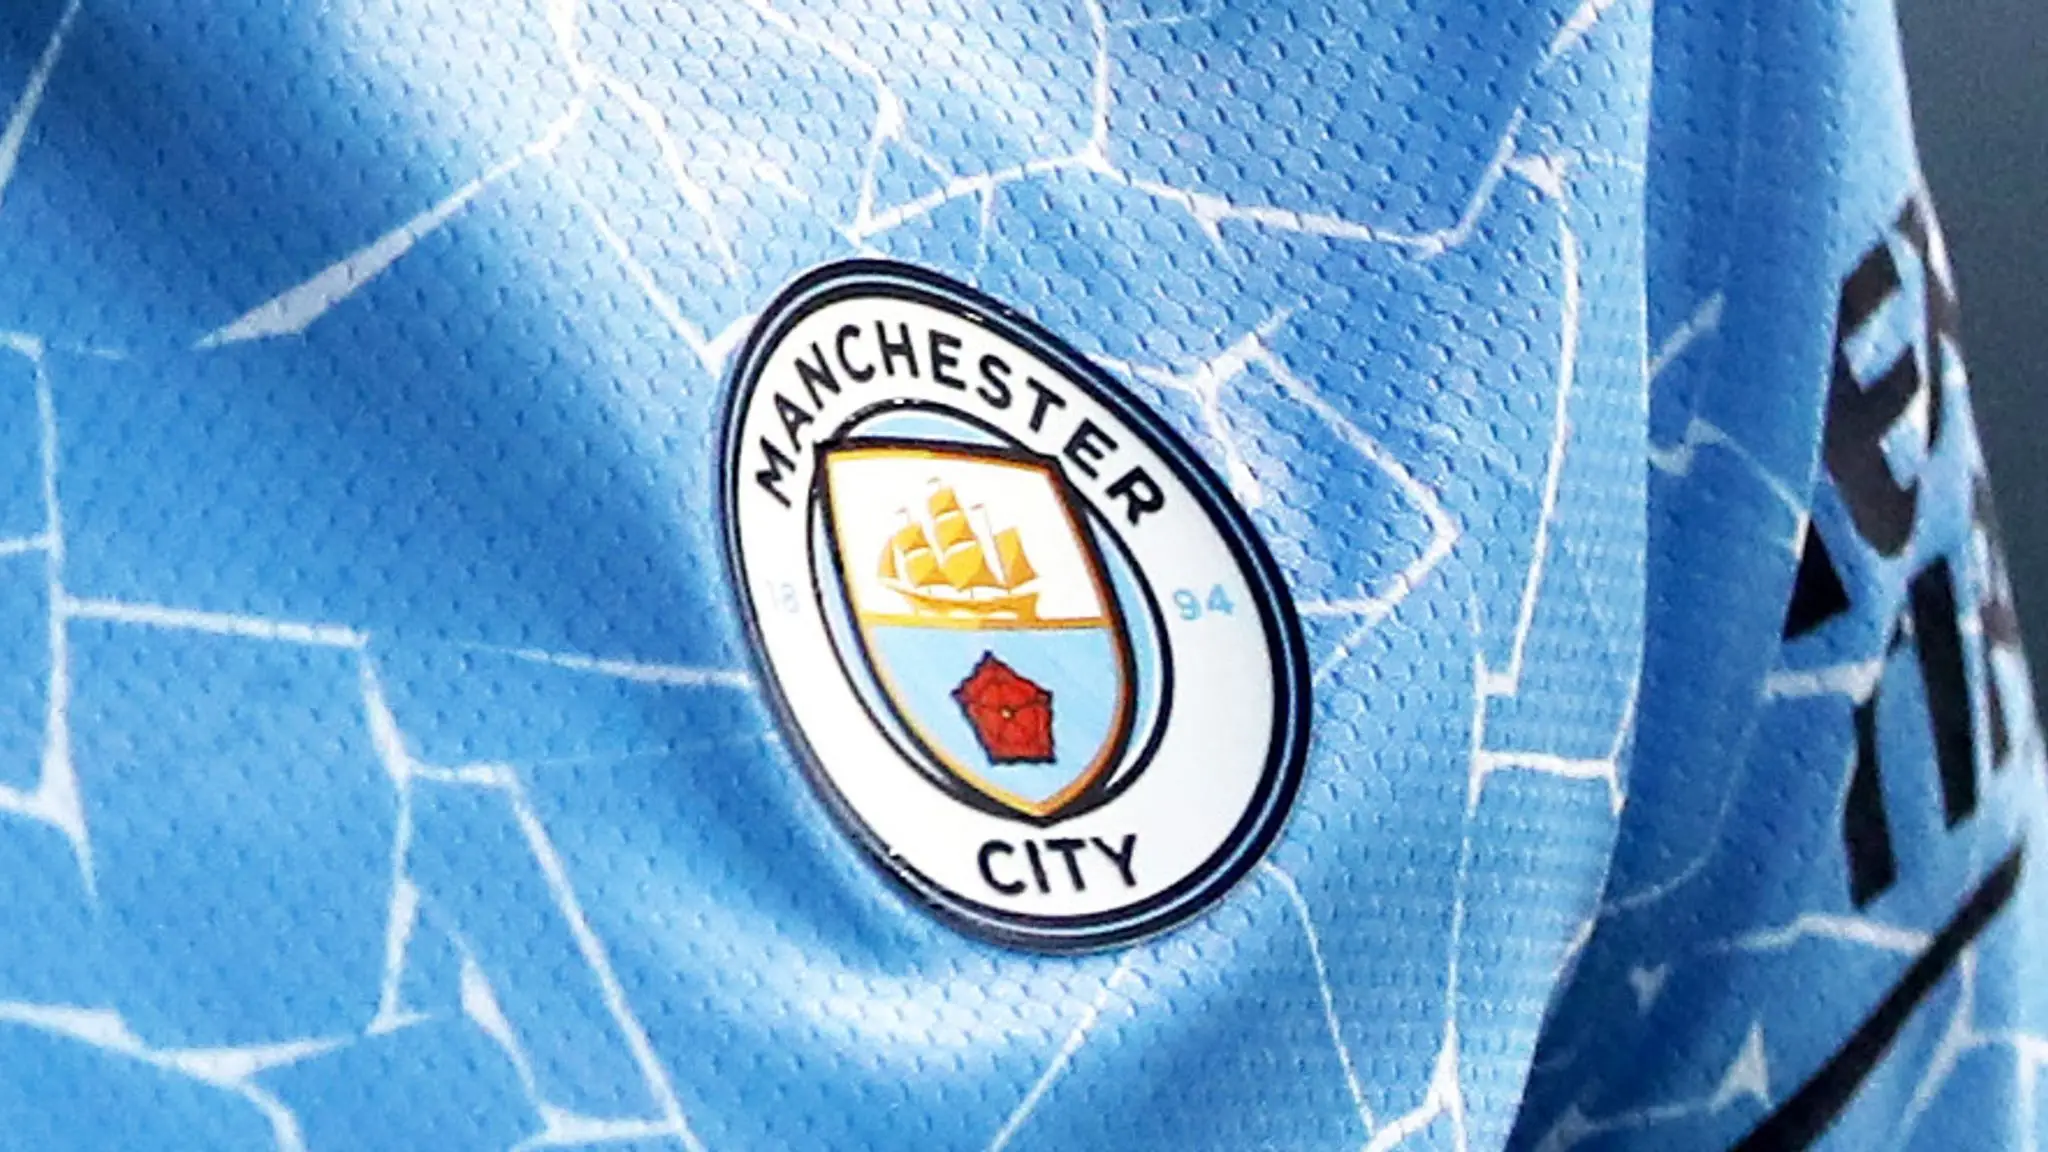 Câu lạc bộ bóng đá Manchester City - Lịch sử, thành tích và sức ảnh hưởng trên toàn thế giới